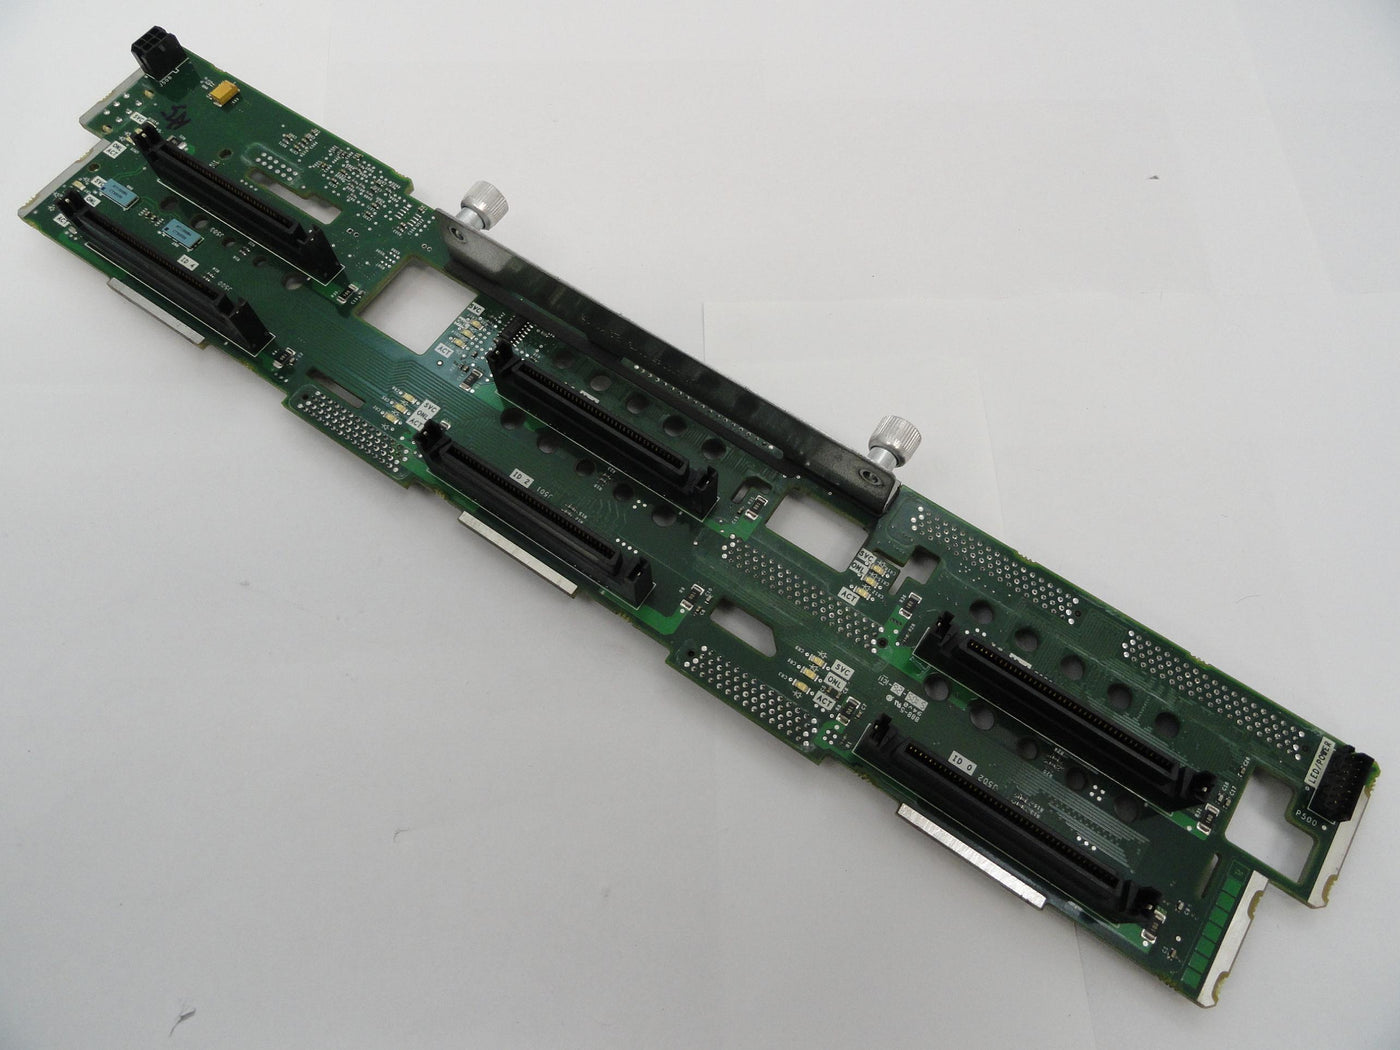 359253-001 - DL380 G4 SCSI Backplane Board - Refurbished